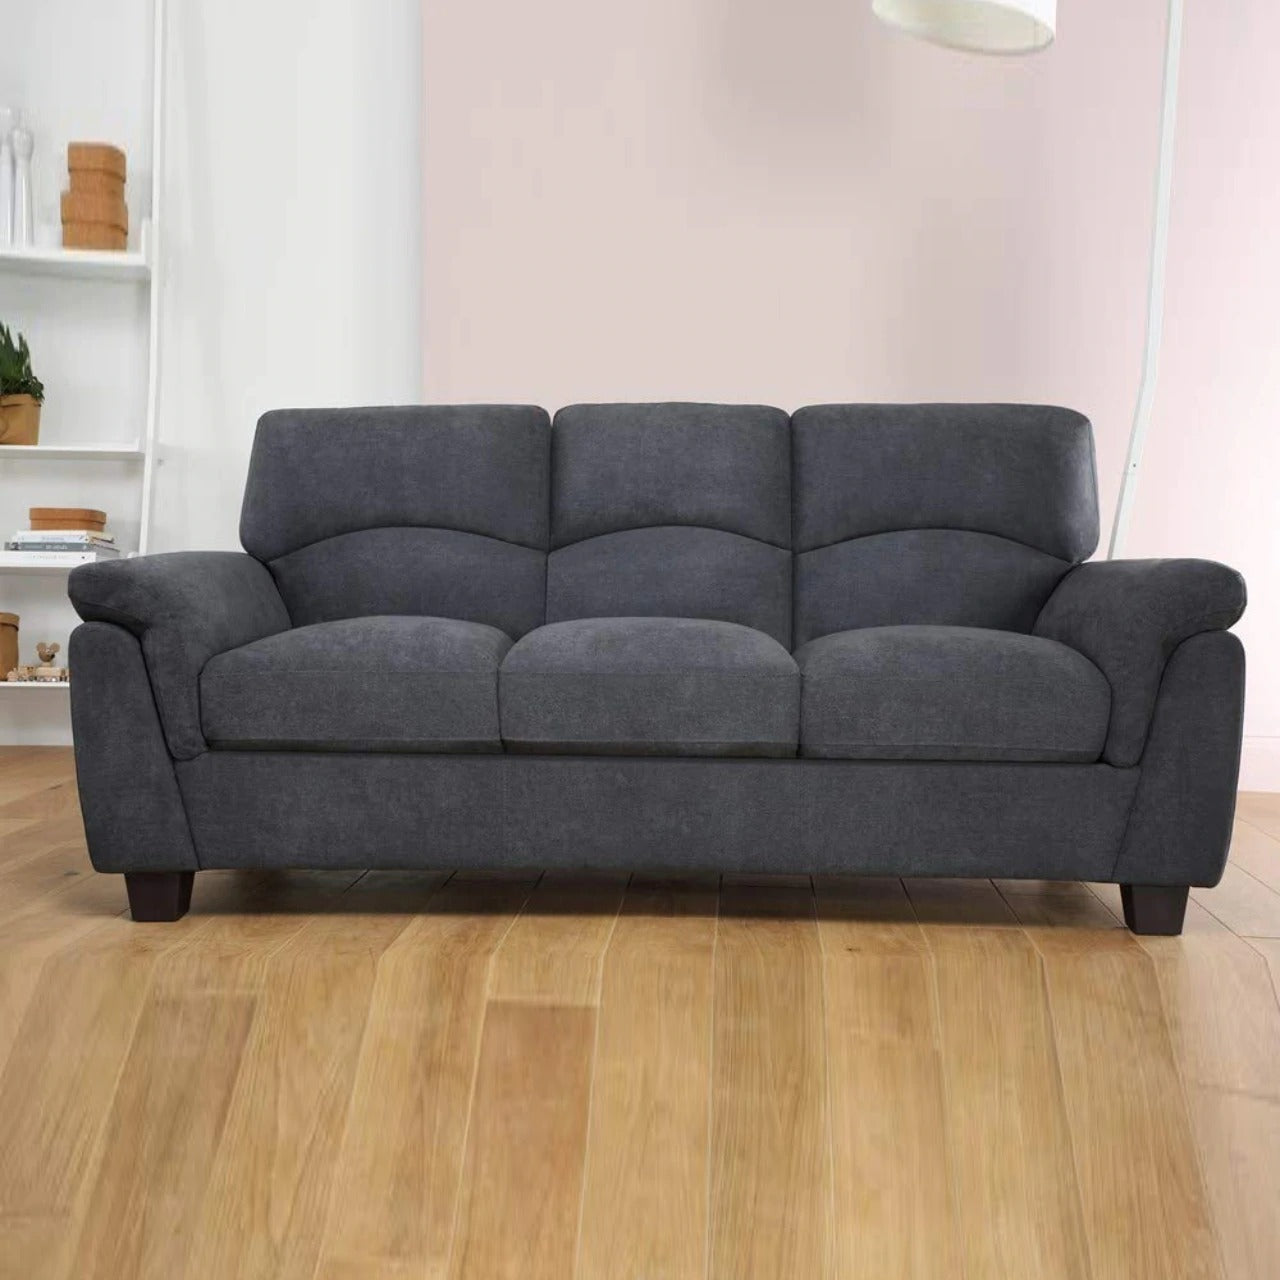 3 Seater Sofa Design: ️341+ ️ Three Seater Sofa Design ...